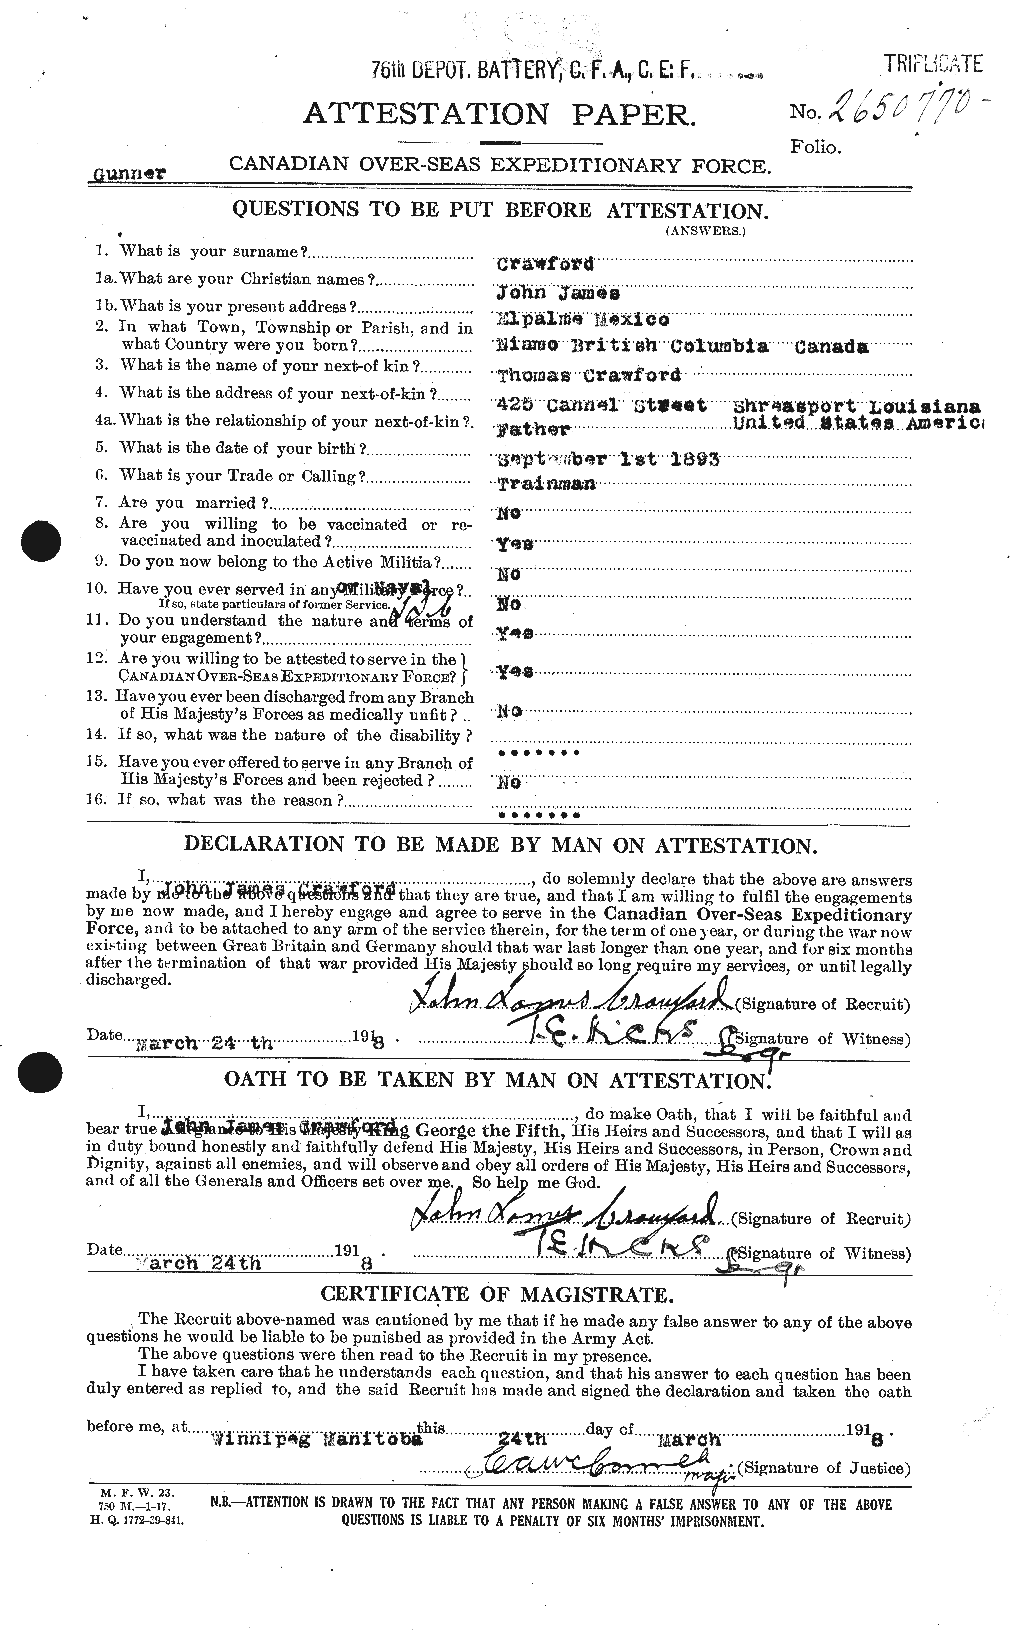 Dossiers du Personnel de la Première Guerre mondiale - CEC 062424a